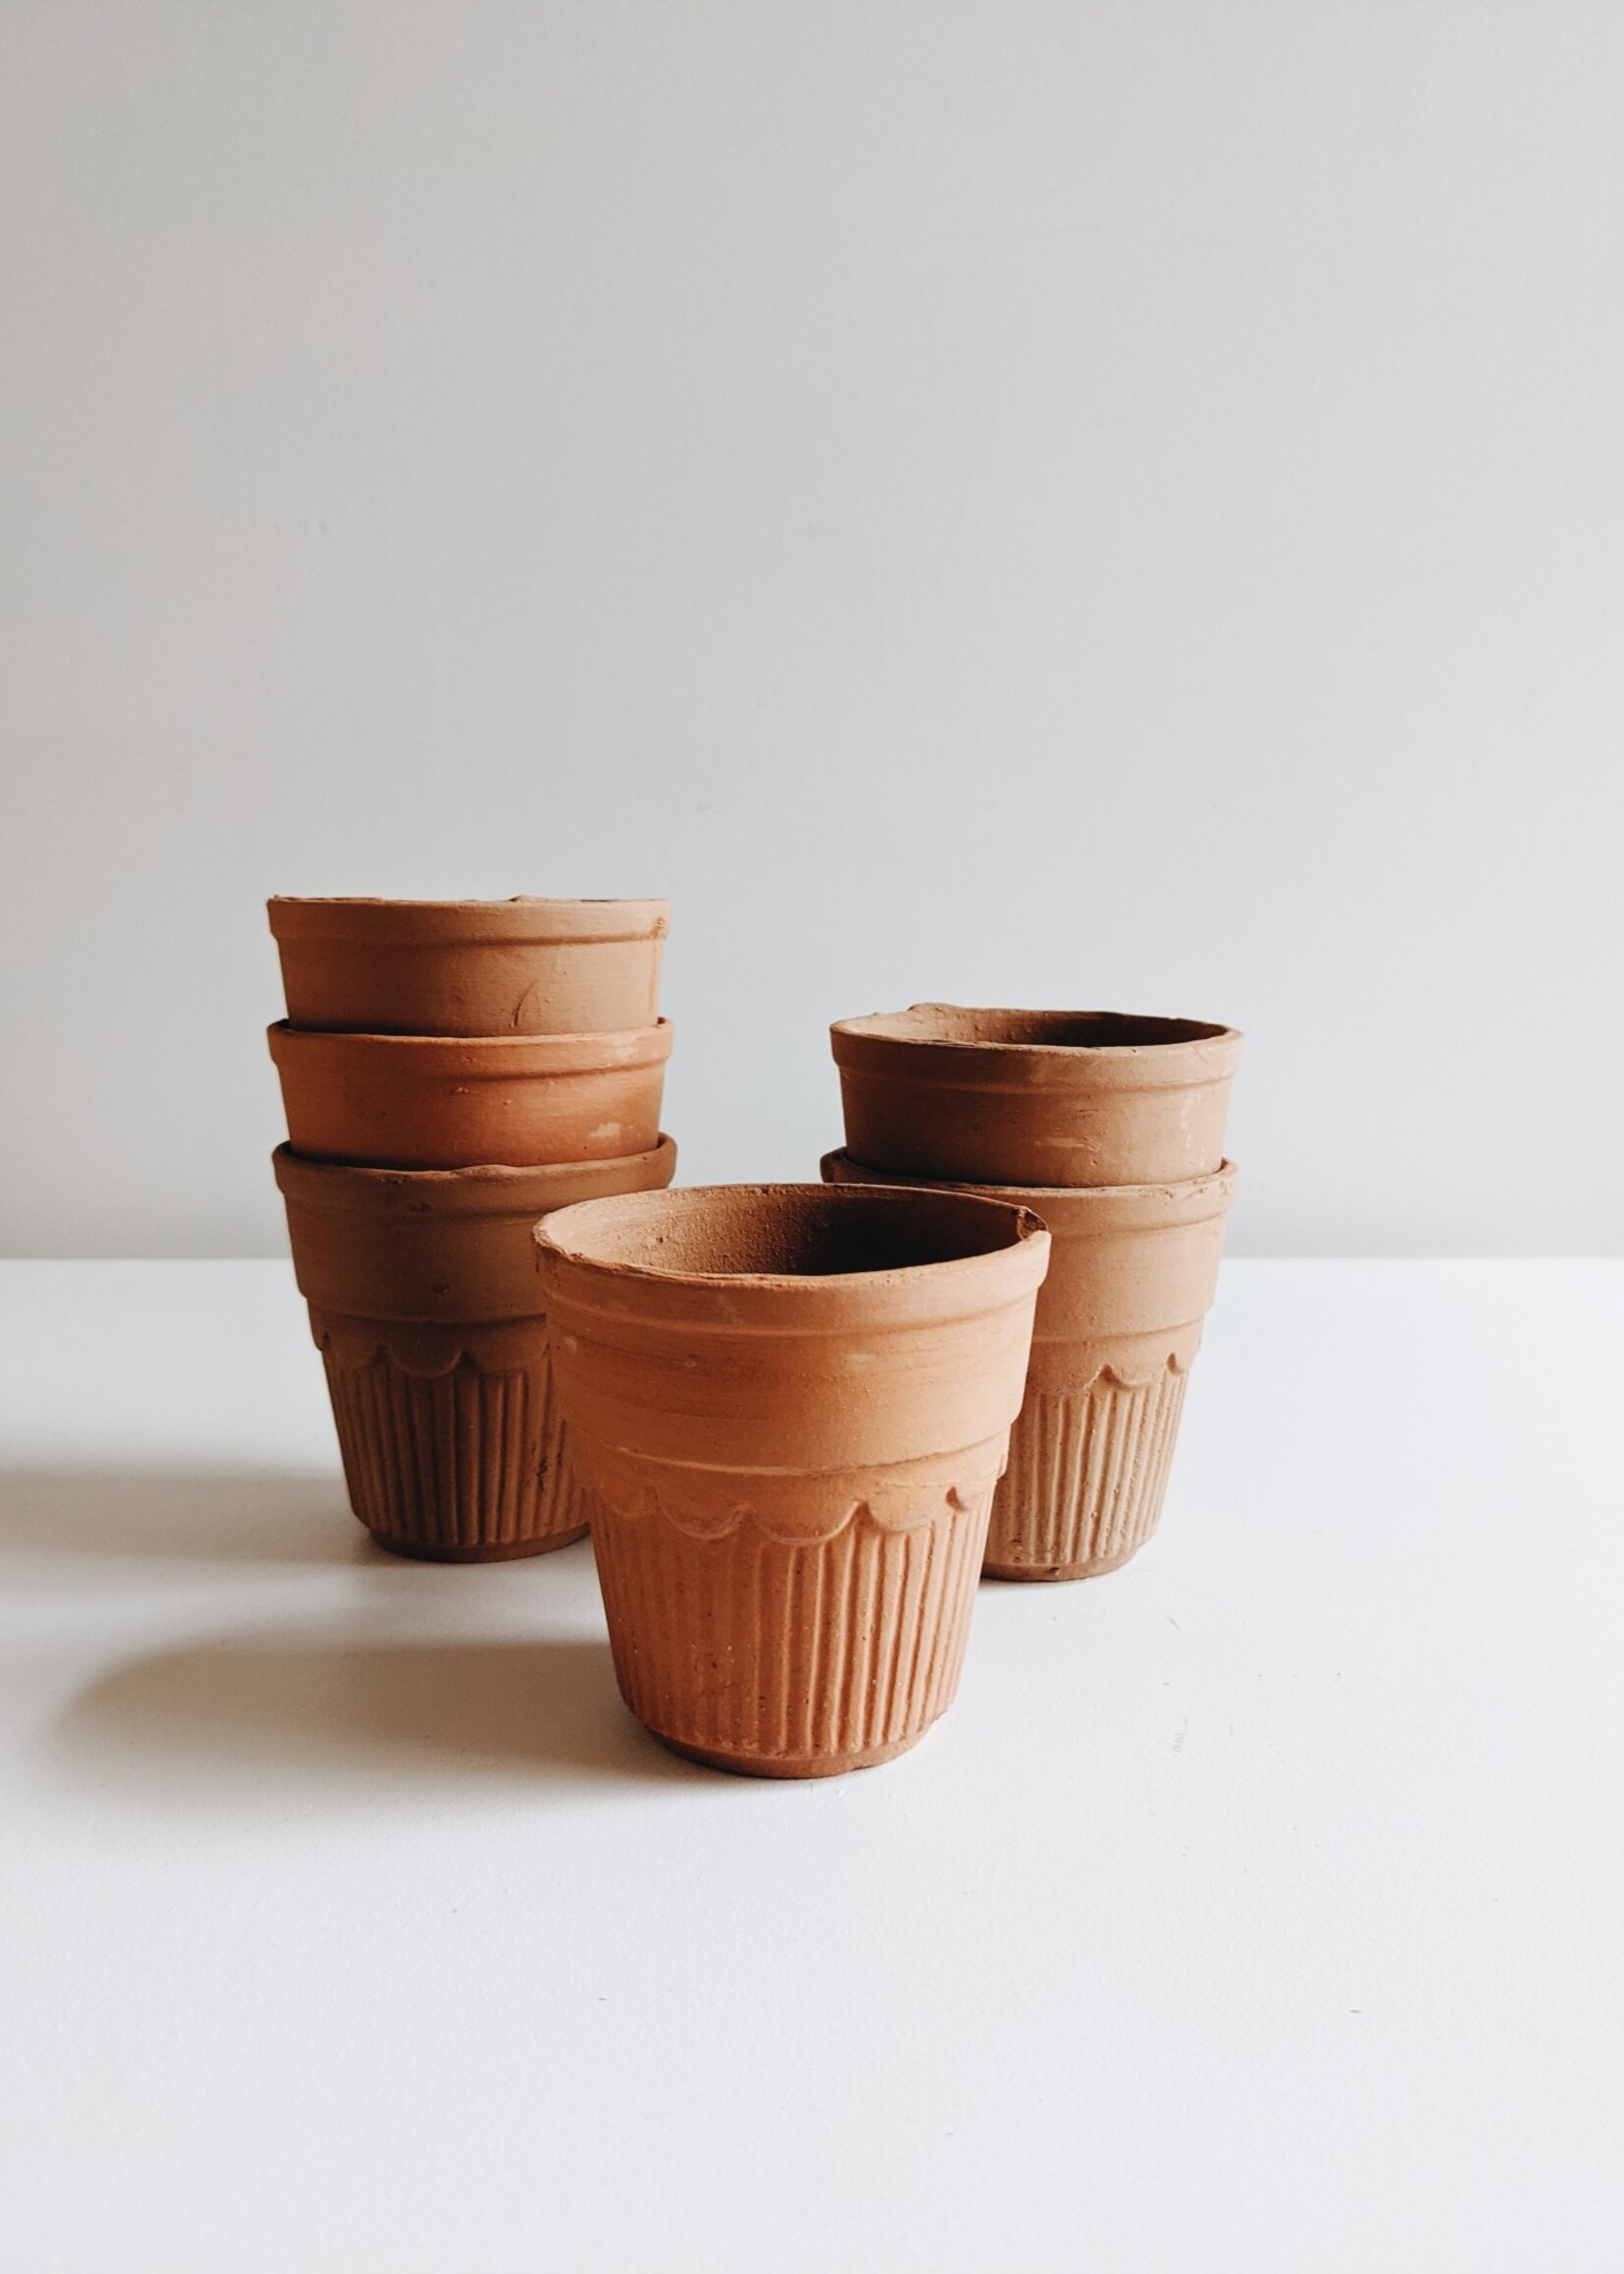 Terracotta Planter (Holds 2''Pot)